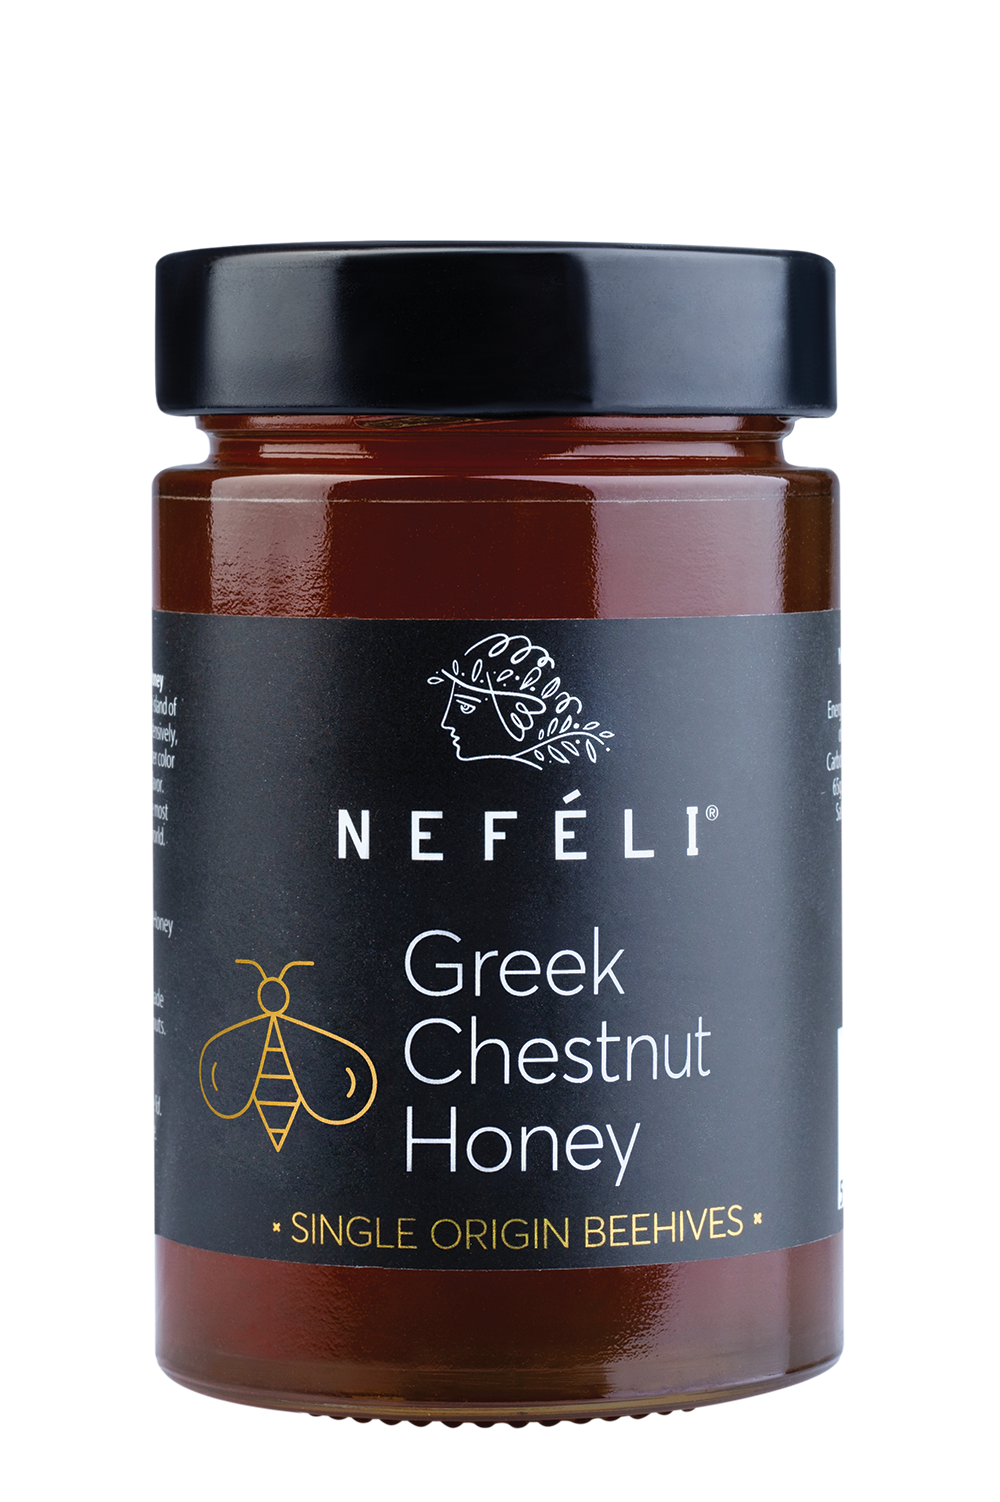 Greek chestnut honey